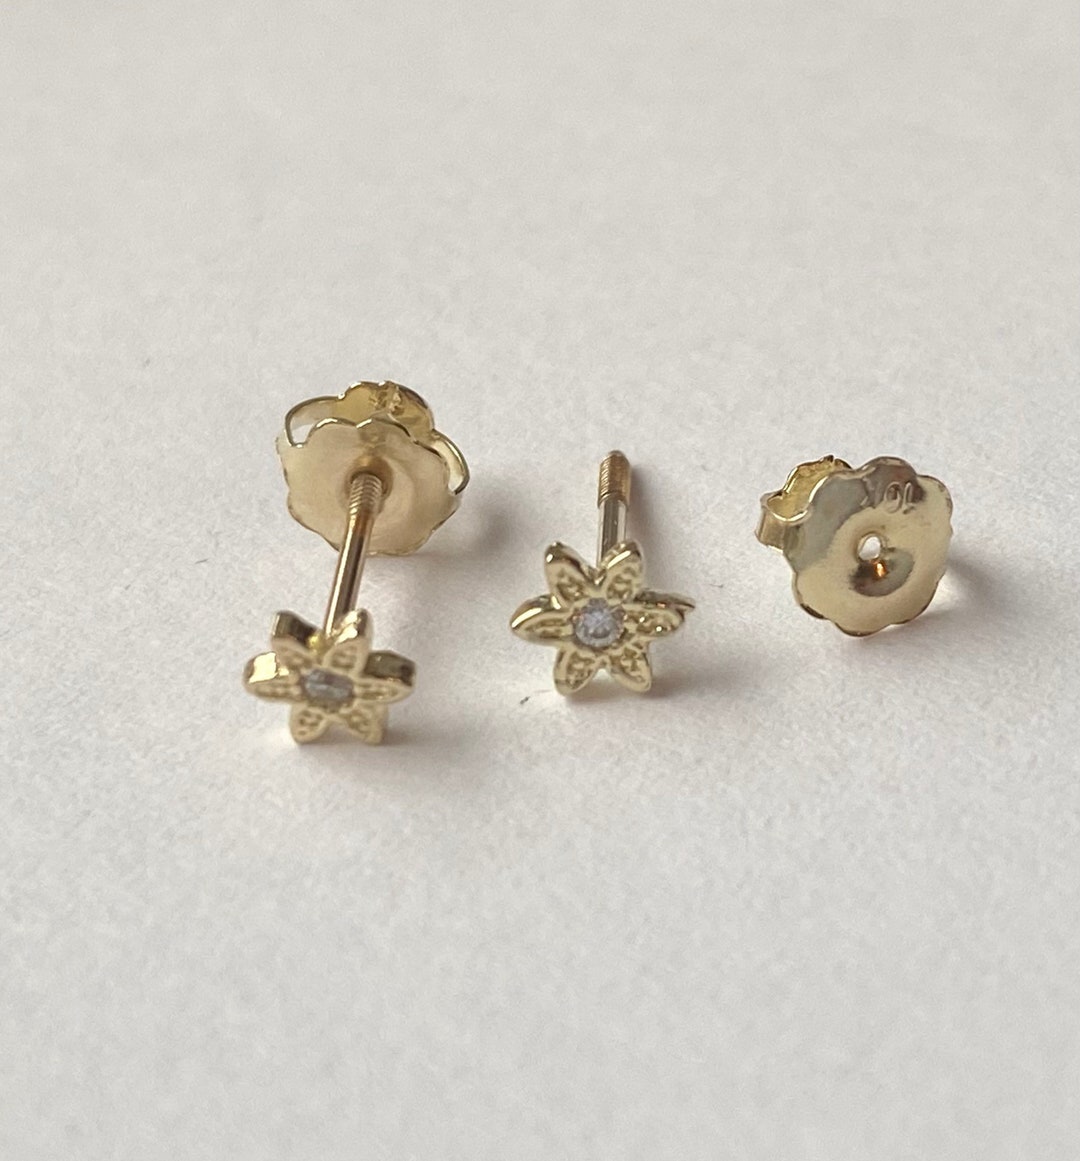 22K Gold Hoop Earrings (Ear Bali) For Baby - 235-GER15810 in 1.1501 Grams